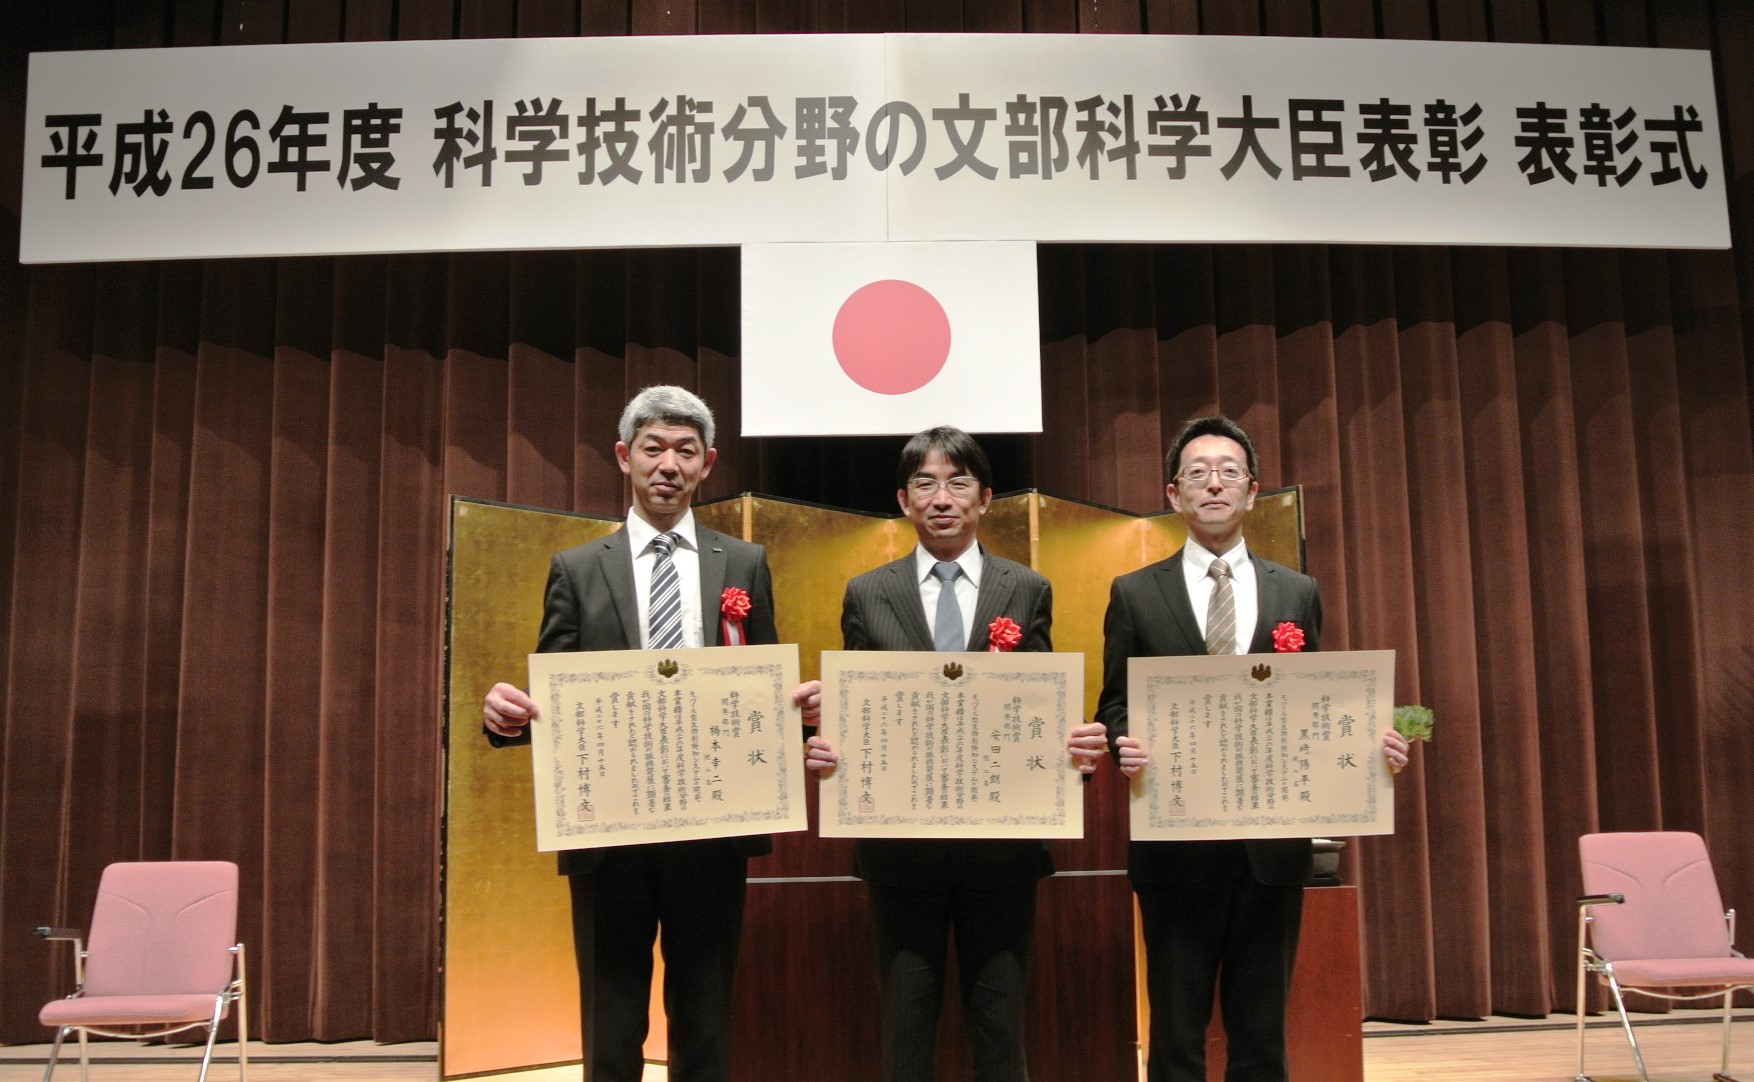 左から 橋本氏、安田教授、黒?助教